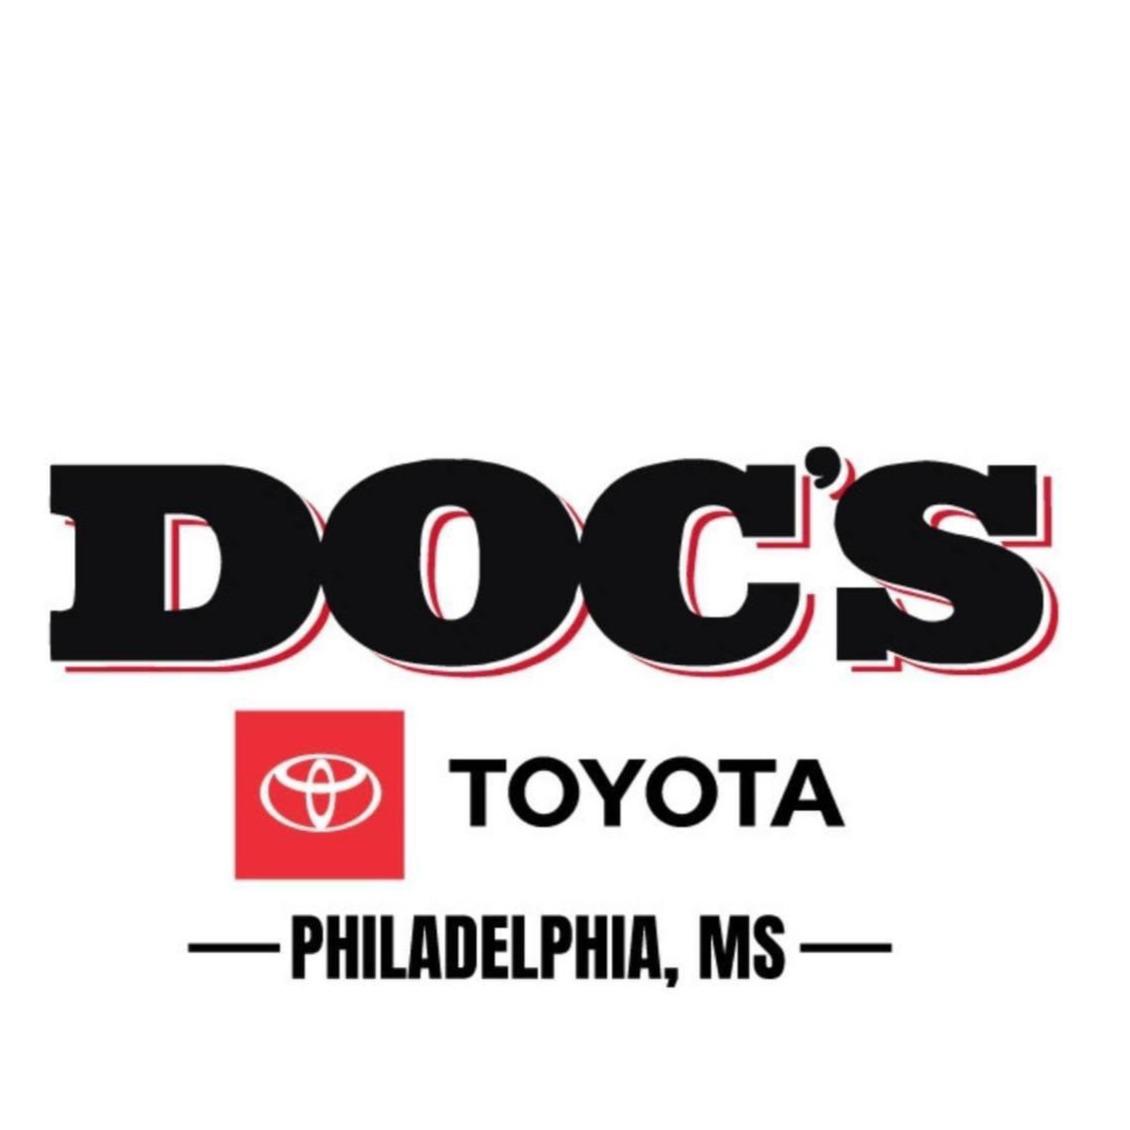 Docs Toyota - Philadelphia, MS 39350 - (601)781-8017 | ShowMeLocal.com